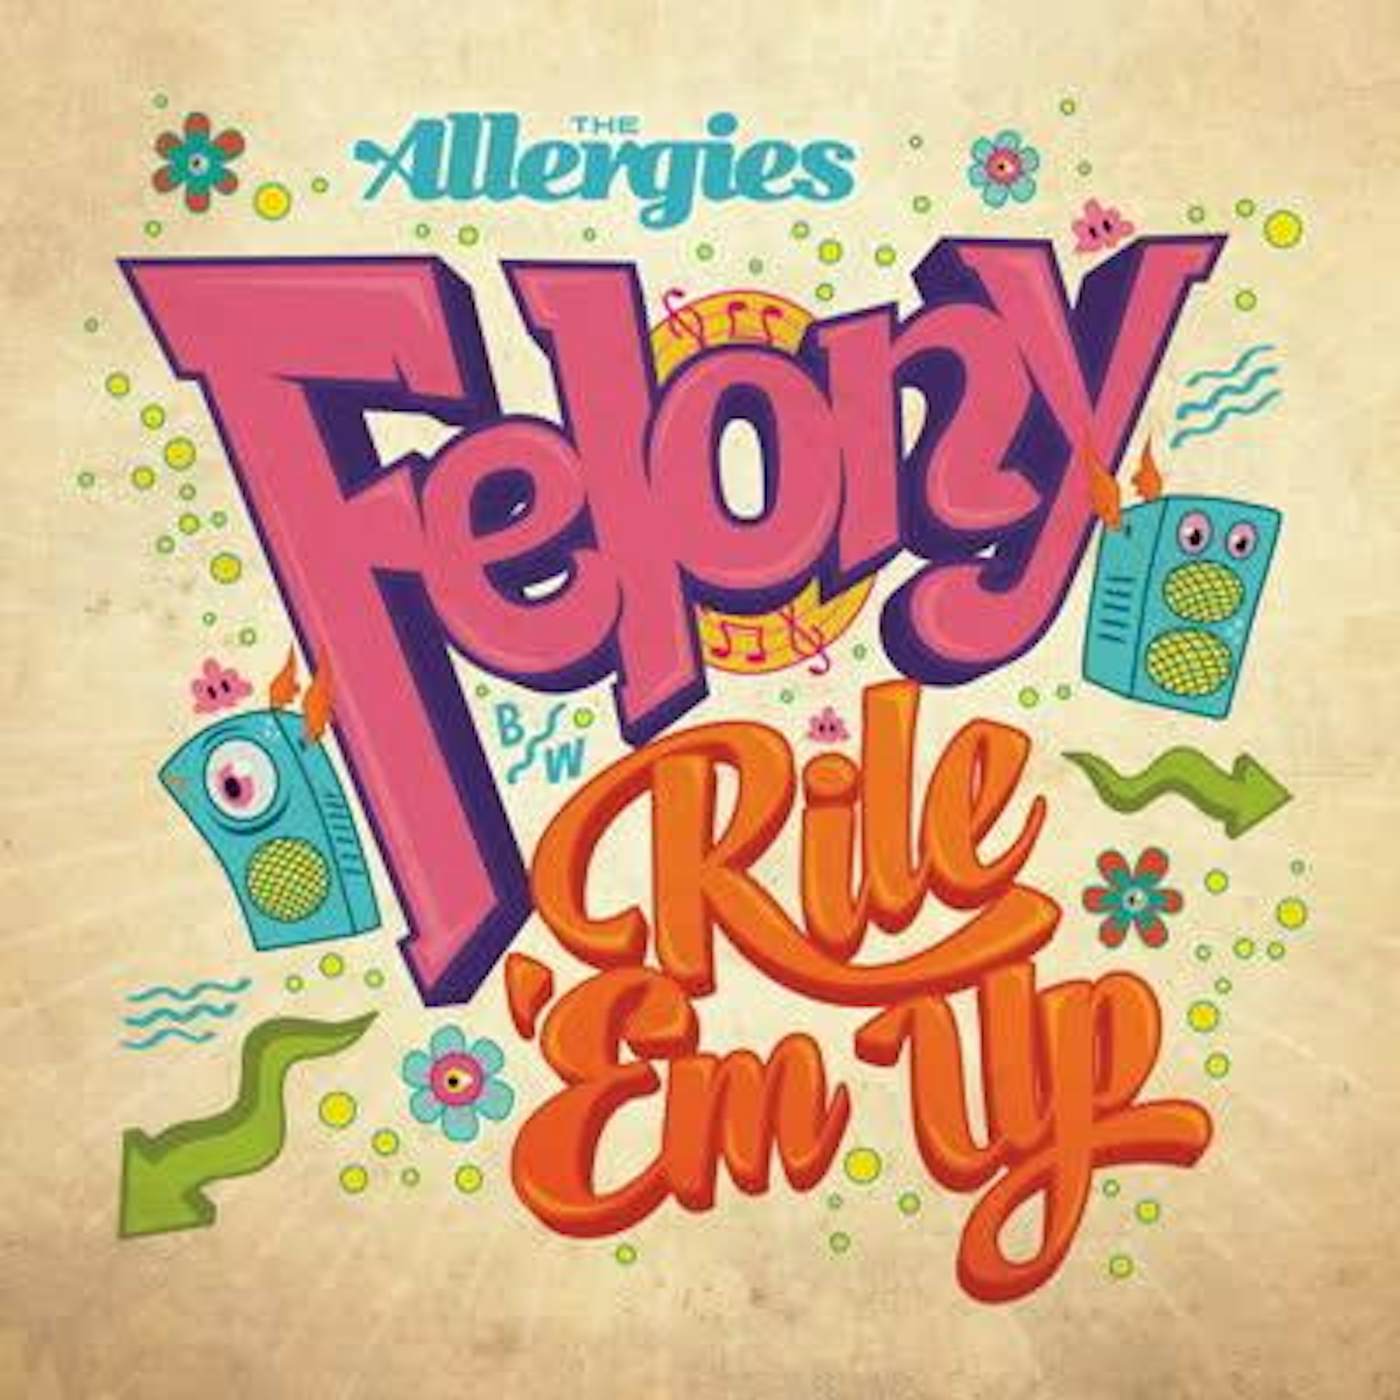 The Allergies Felony Vinyl Record